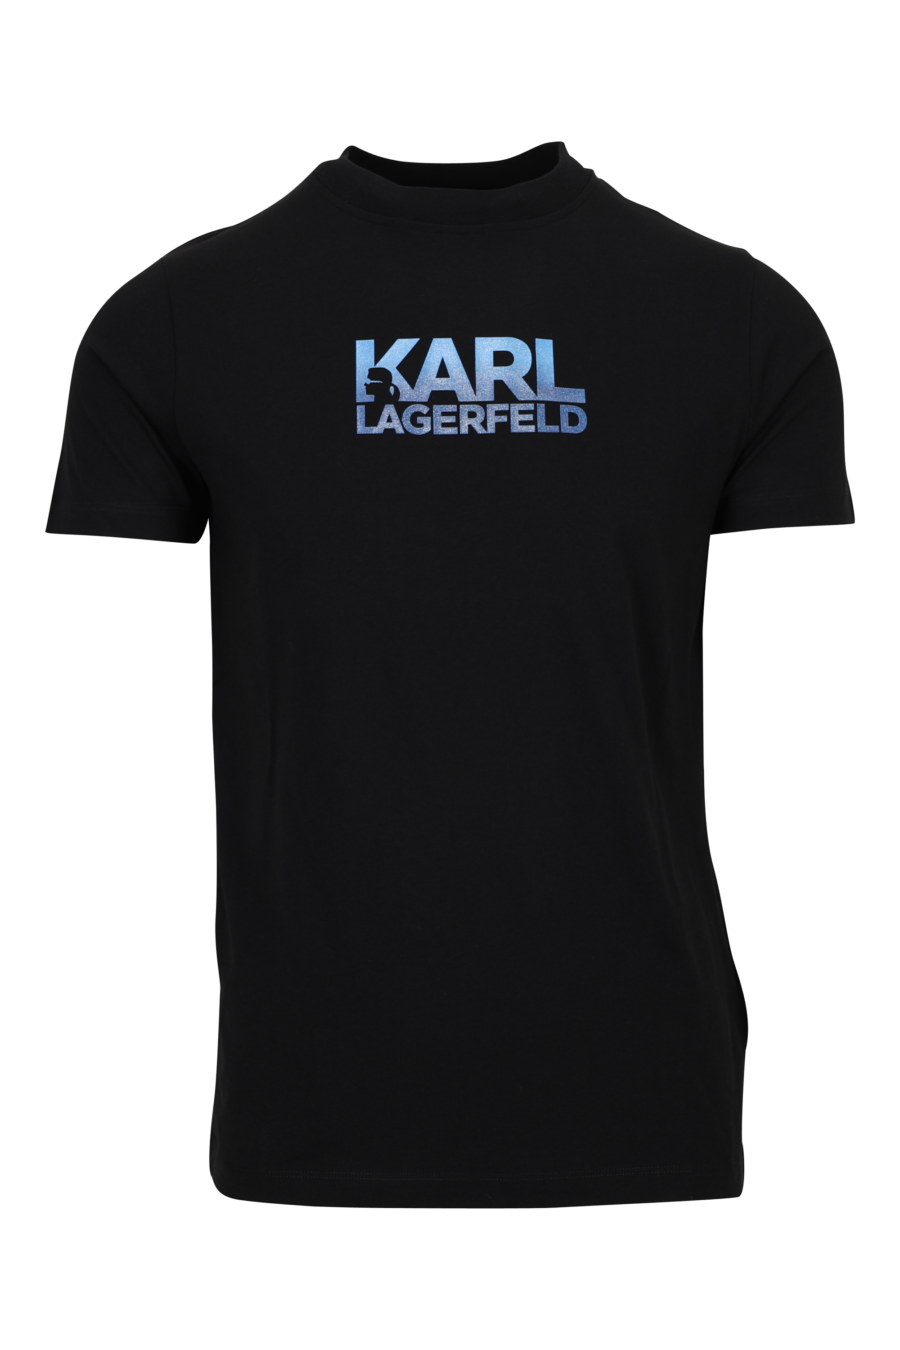 Camiseta negra con maxilogo azul centrado - 4062226962506